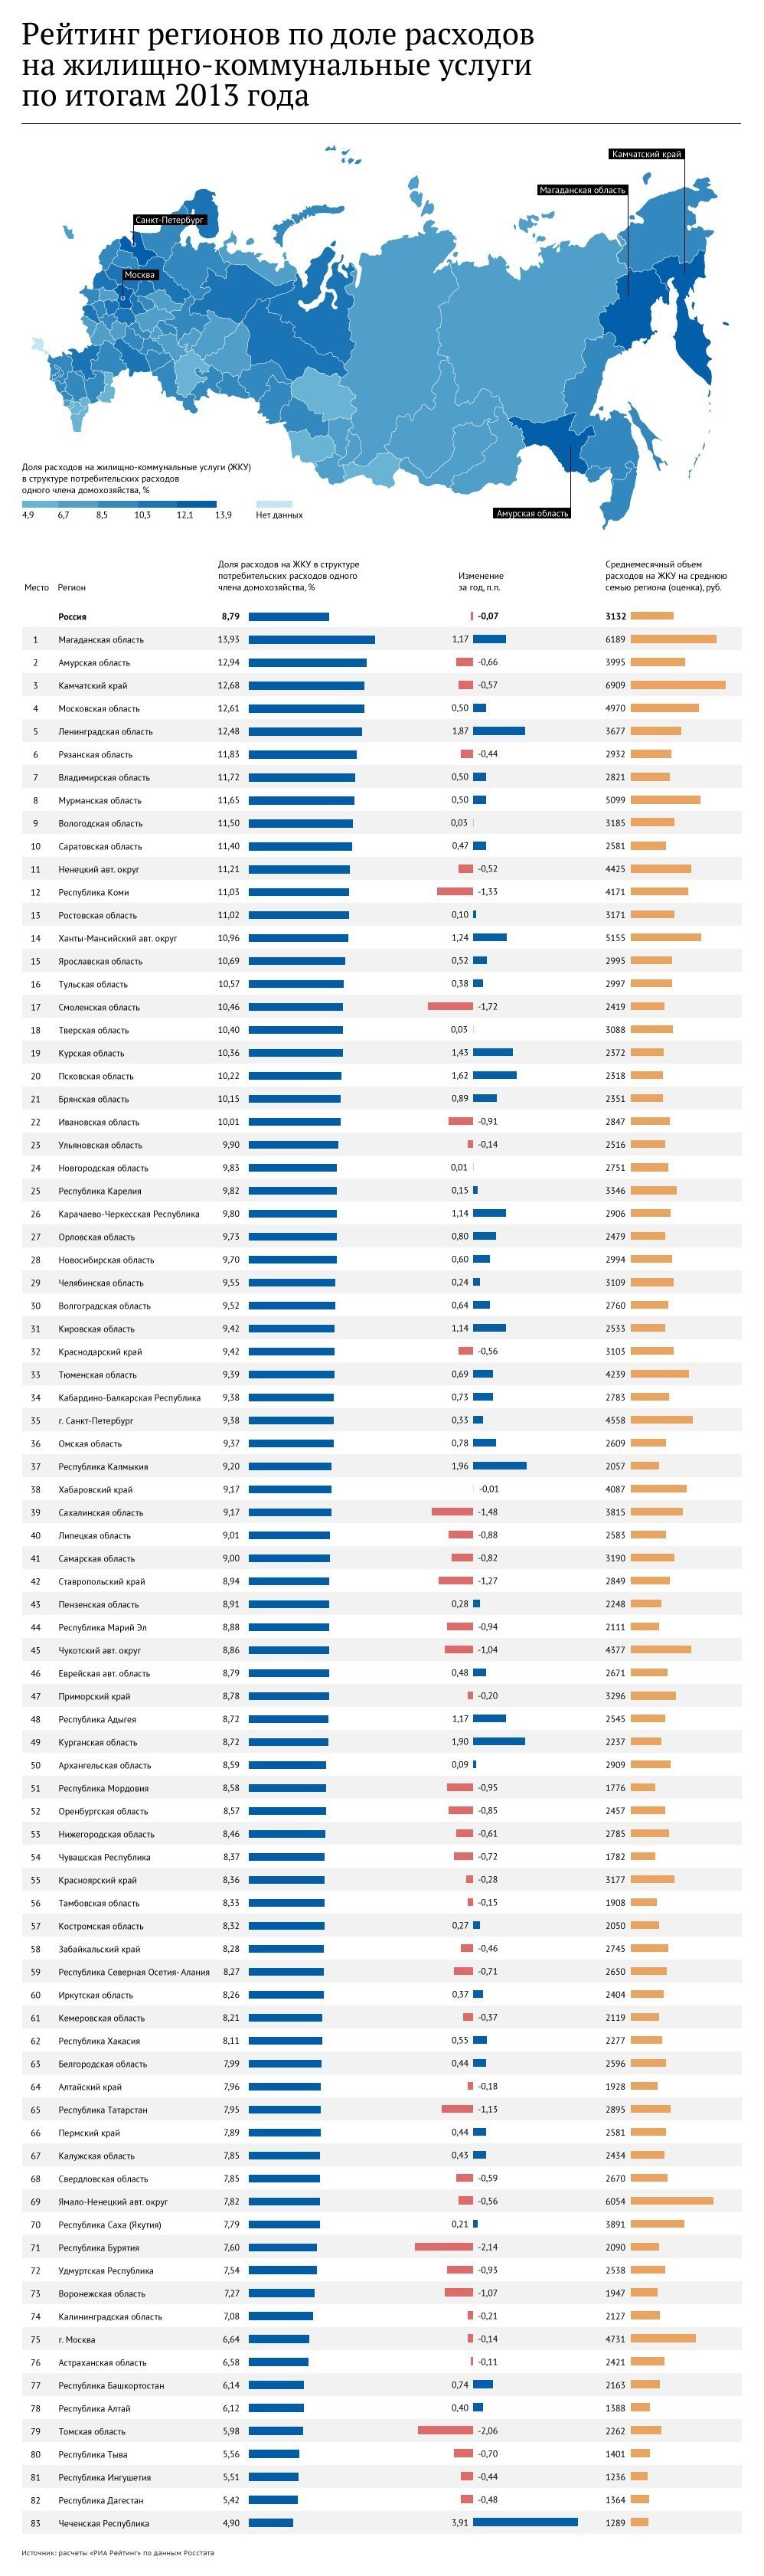 Рейтинг регионов по доле расходов населения на ЖКУ - 2014